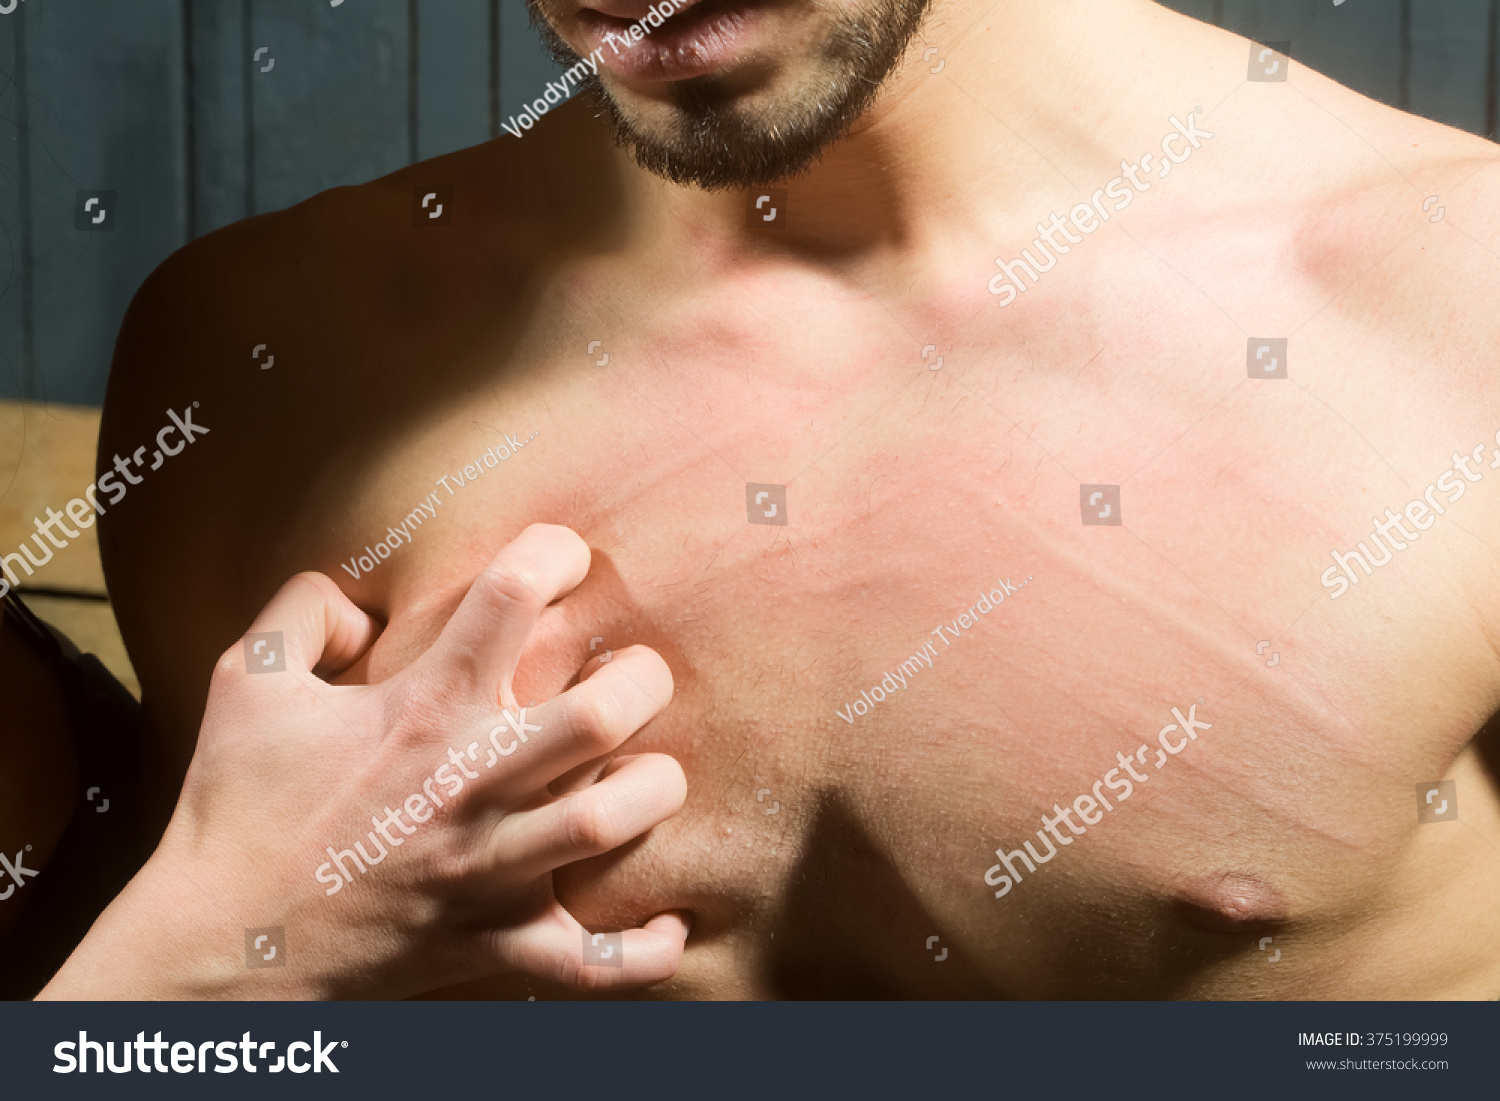 шарик на груди у мужчин фото 114